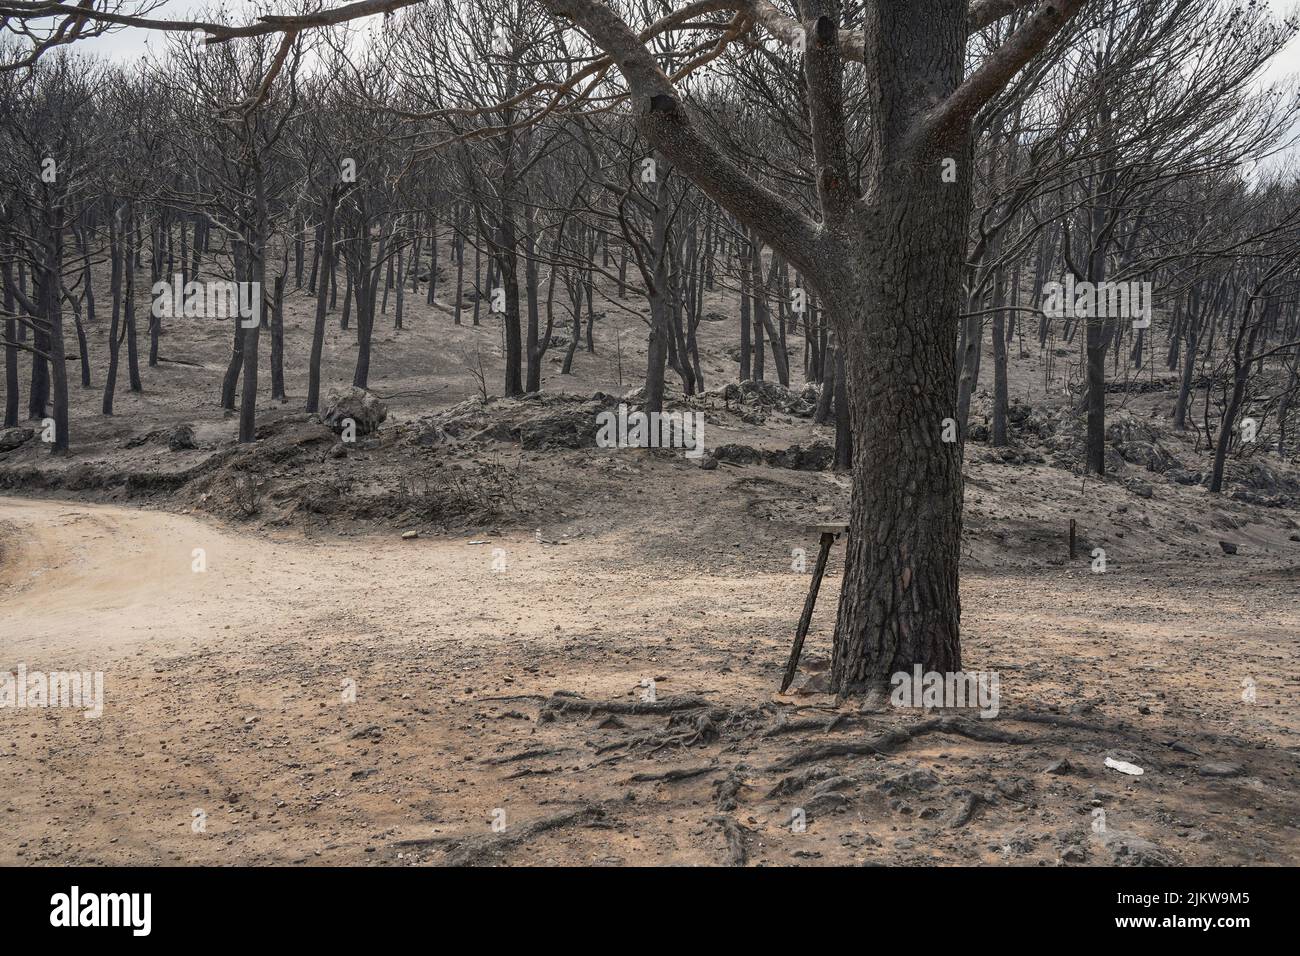 Montañas españolas con bosques de pinos quemados después de incendios forestales, Mijas, Málaga, Andalucía, España Foto de stock